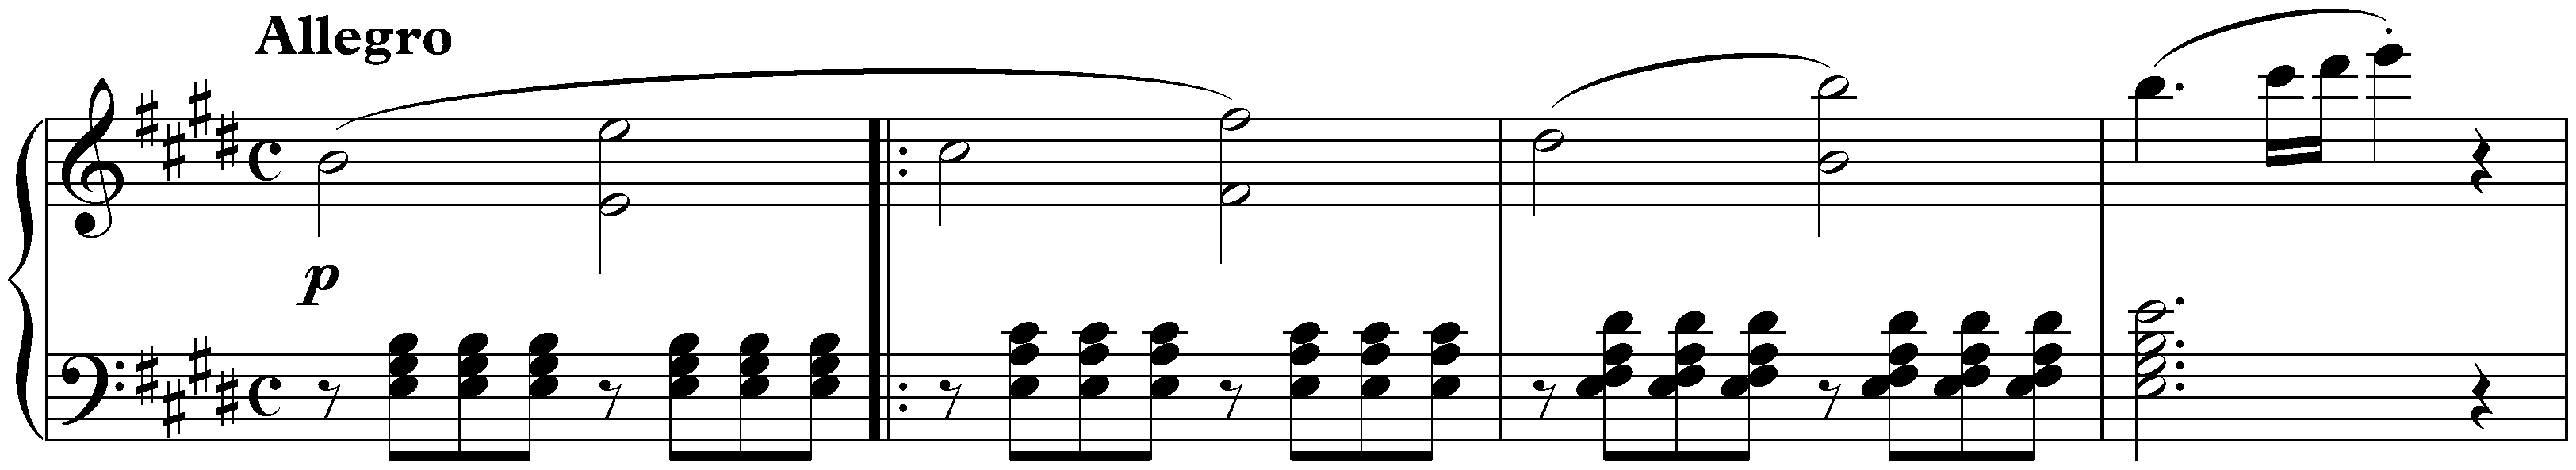 Sonata no. 9 in E major, op. 14 no. 1; 1. Allegro